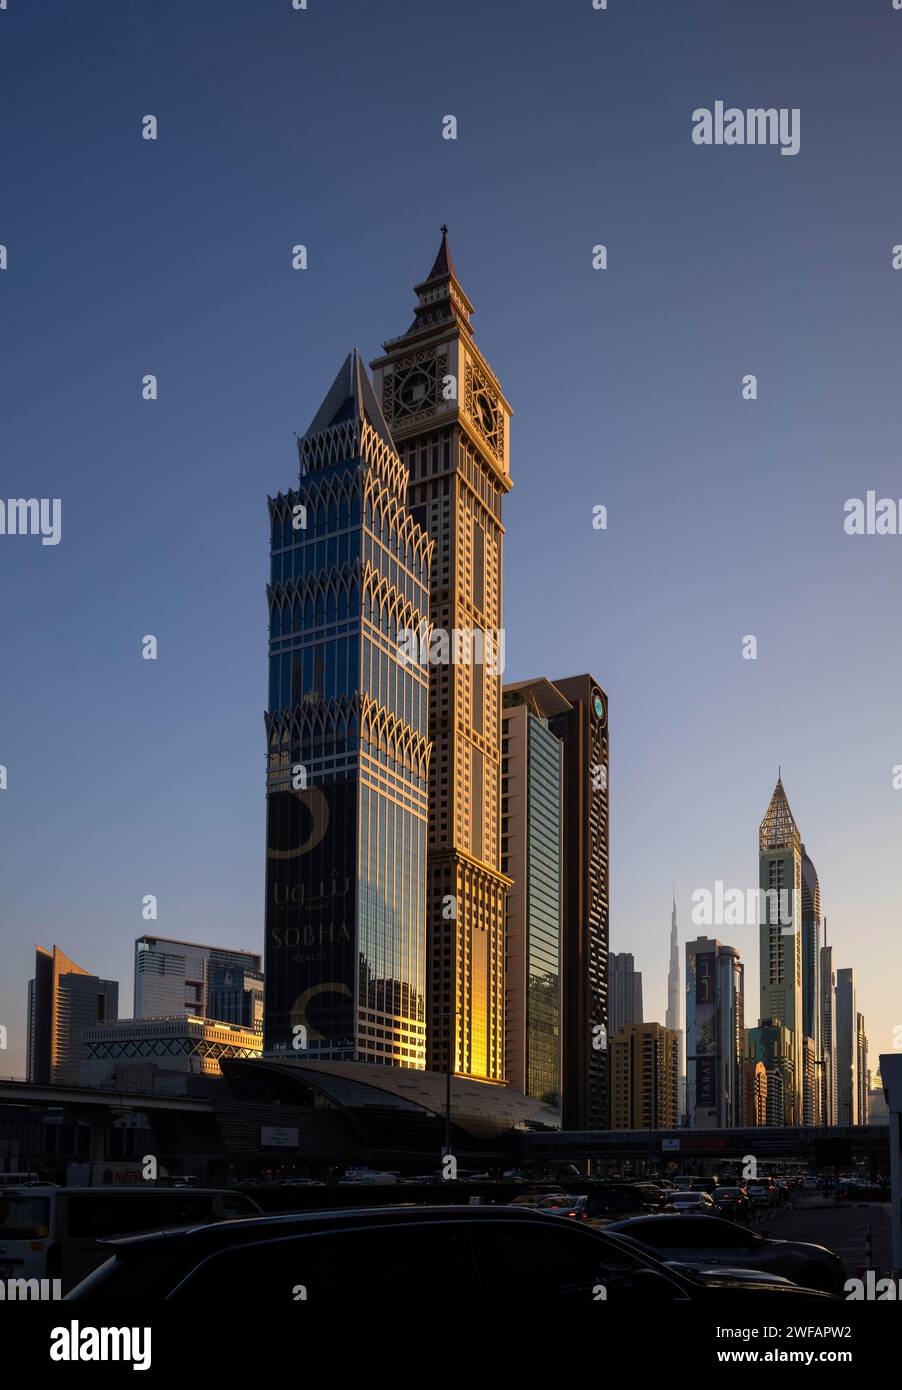 Burj Khalifa, Al Yaqoub Tower, Gerova Hotel, gratte-ciel, gratte-ciel, centre-ville, quartier financier, lumière du soir, heure dorée, Dubaï, arabe Uni Banque D'Images